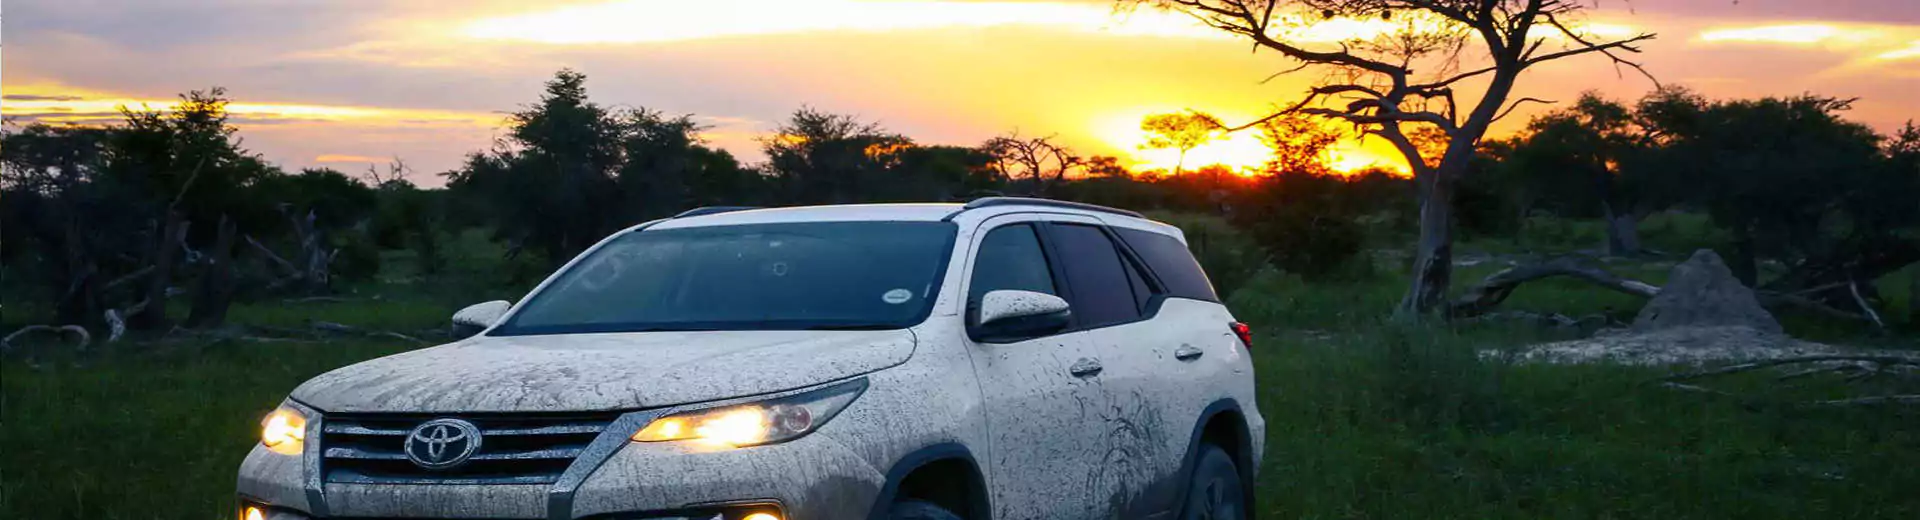 Mietwagenreisen Natur Toyota auto im sonnenuntergang